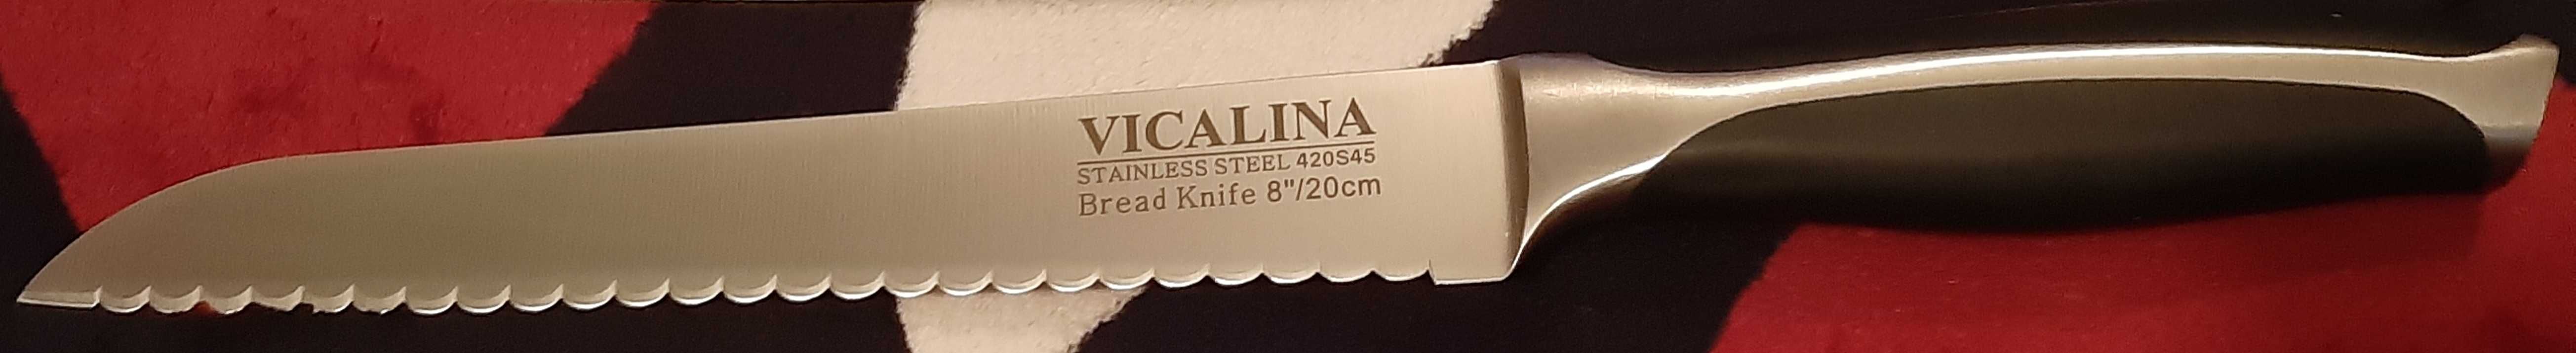 Нож большой VICALINA поварской универсальный. 20см.НОВЫЙ. ДОСТАВКА.